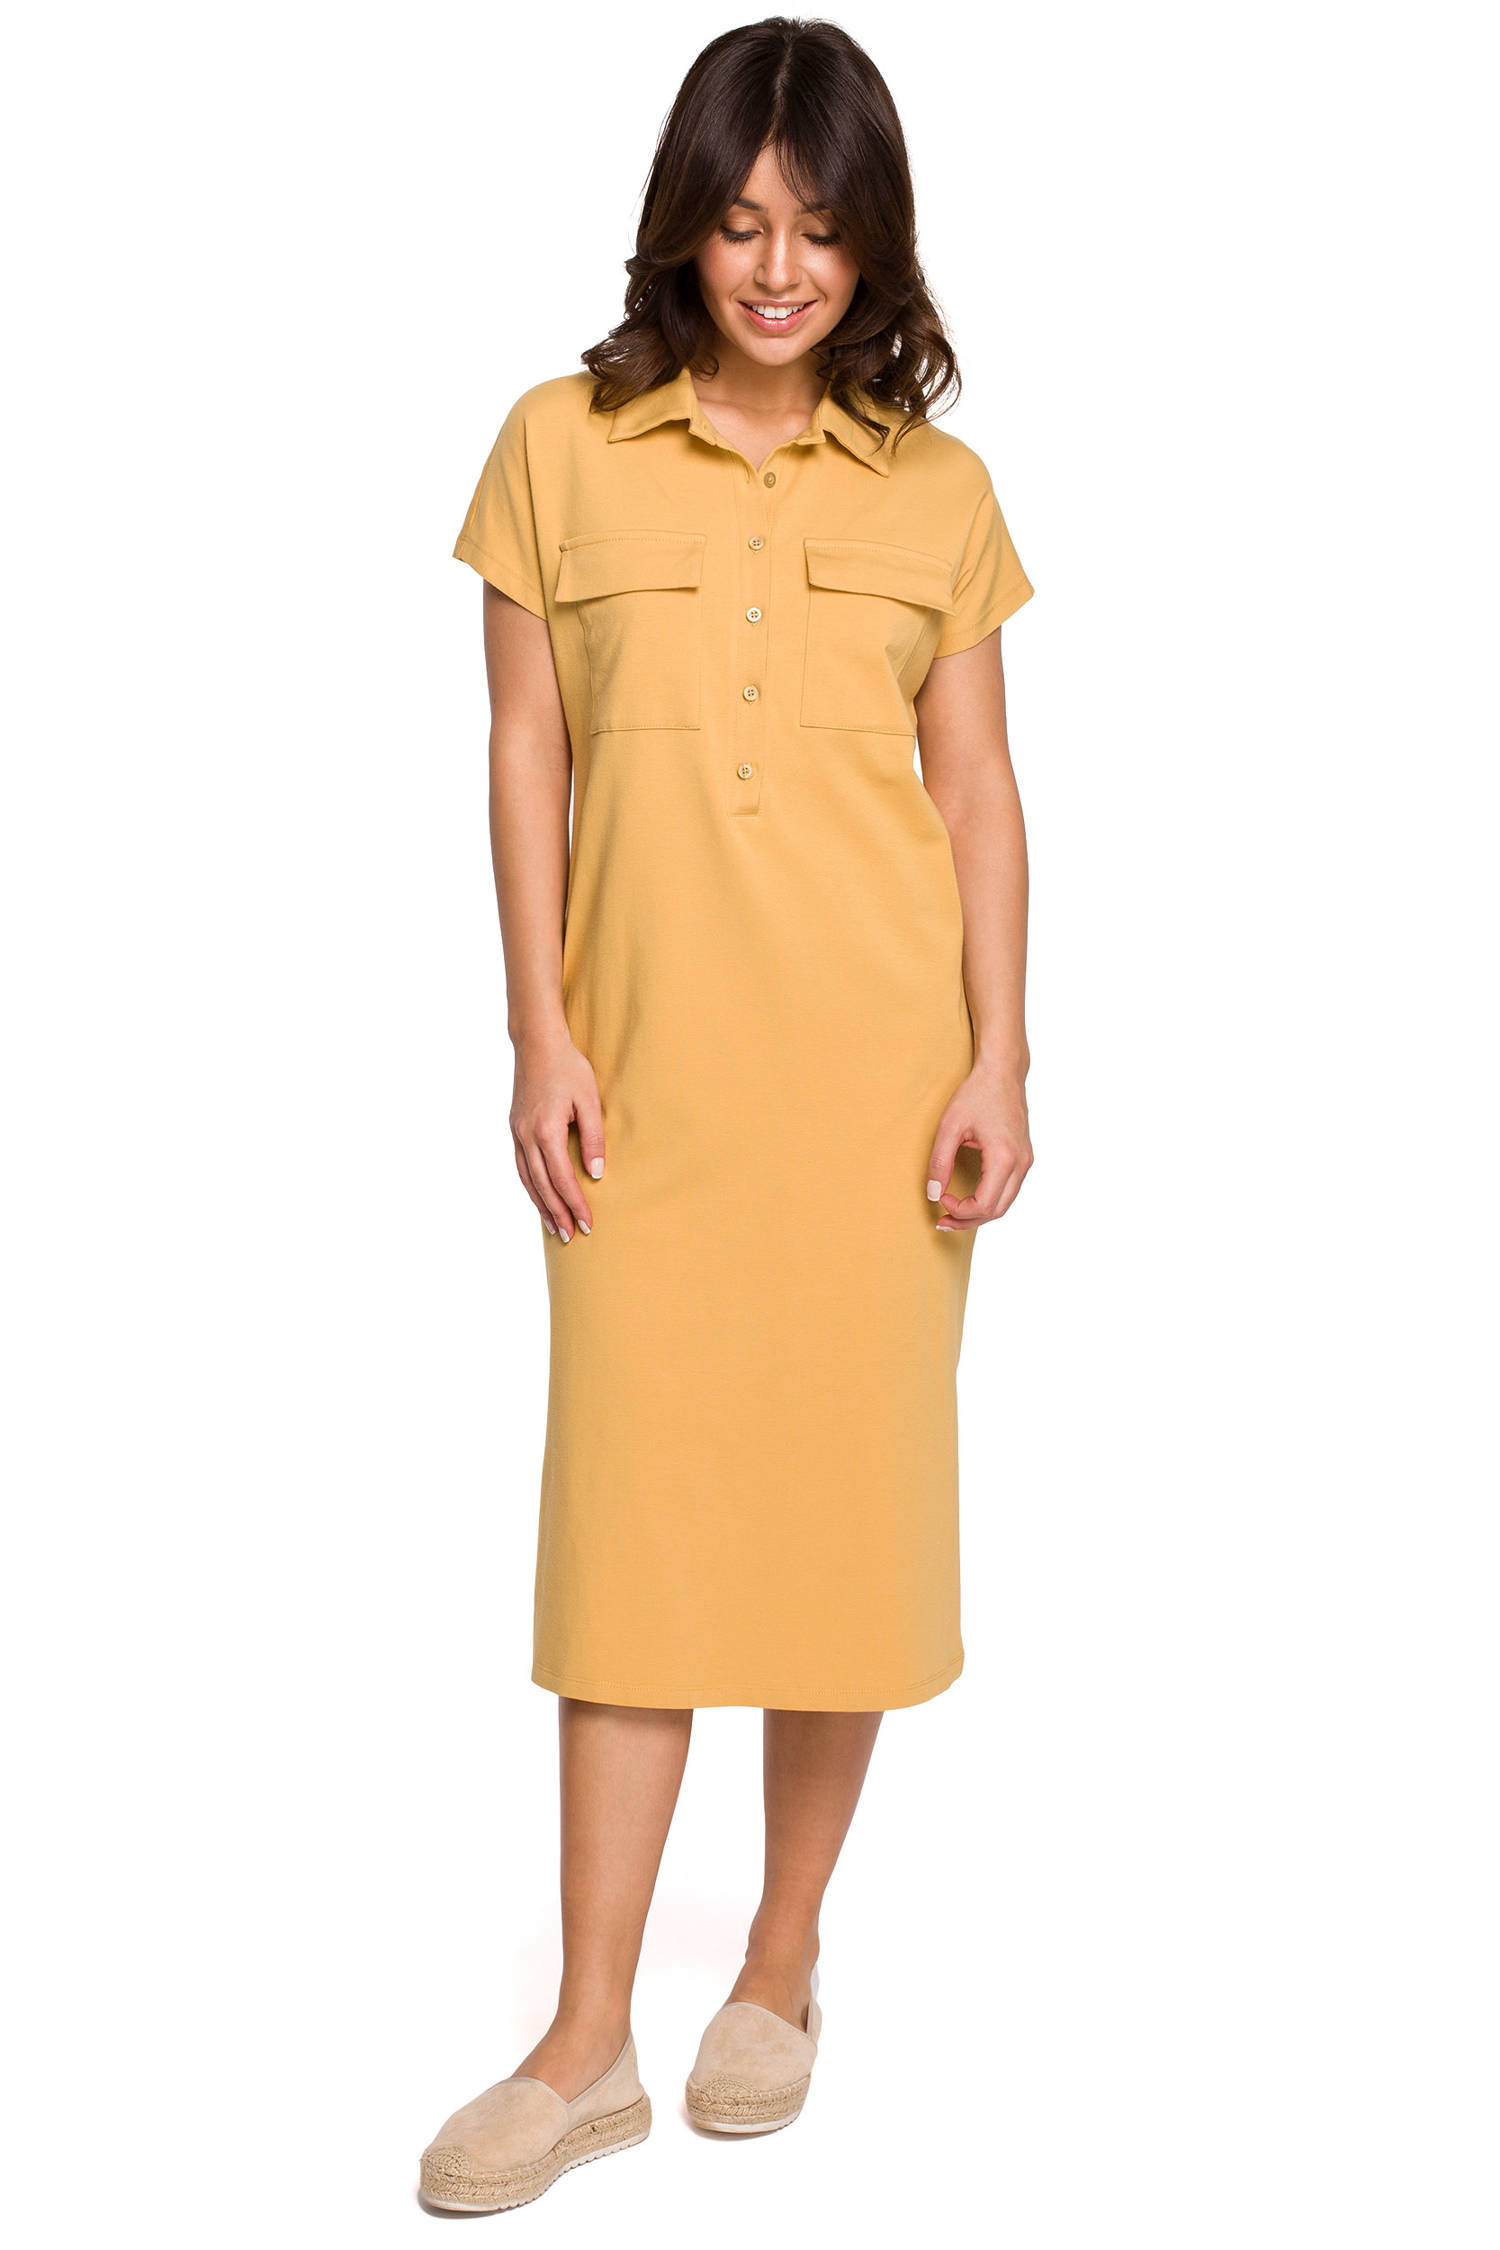 Opis: Sukienka koszulowa na lato szmizjerka z kołnierzykiem żółta bawełna.